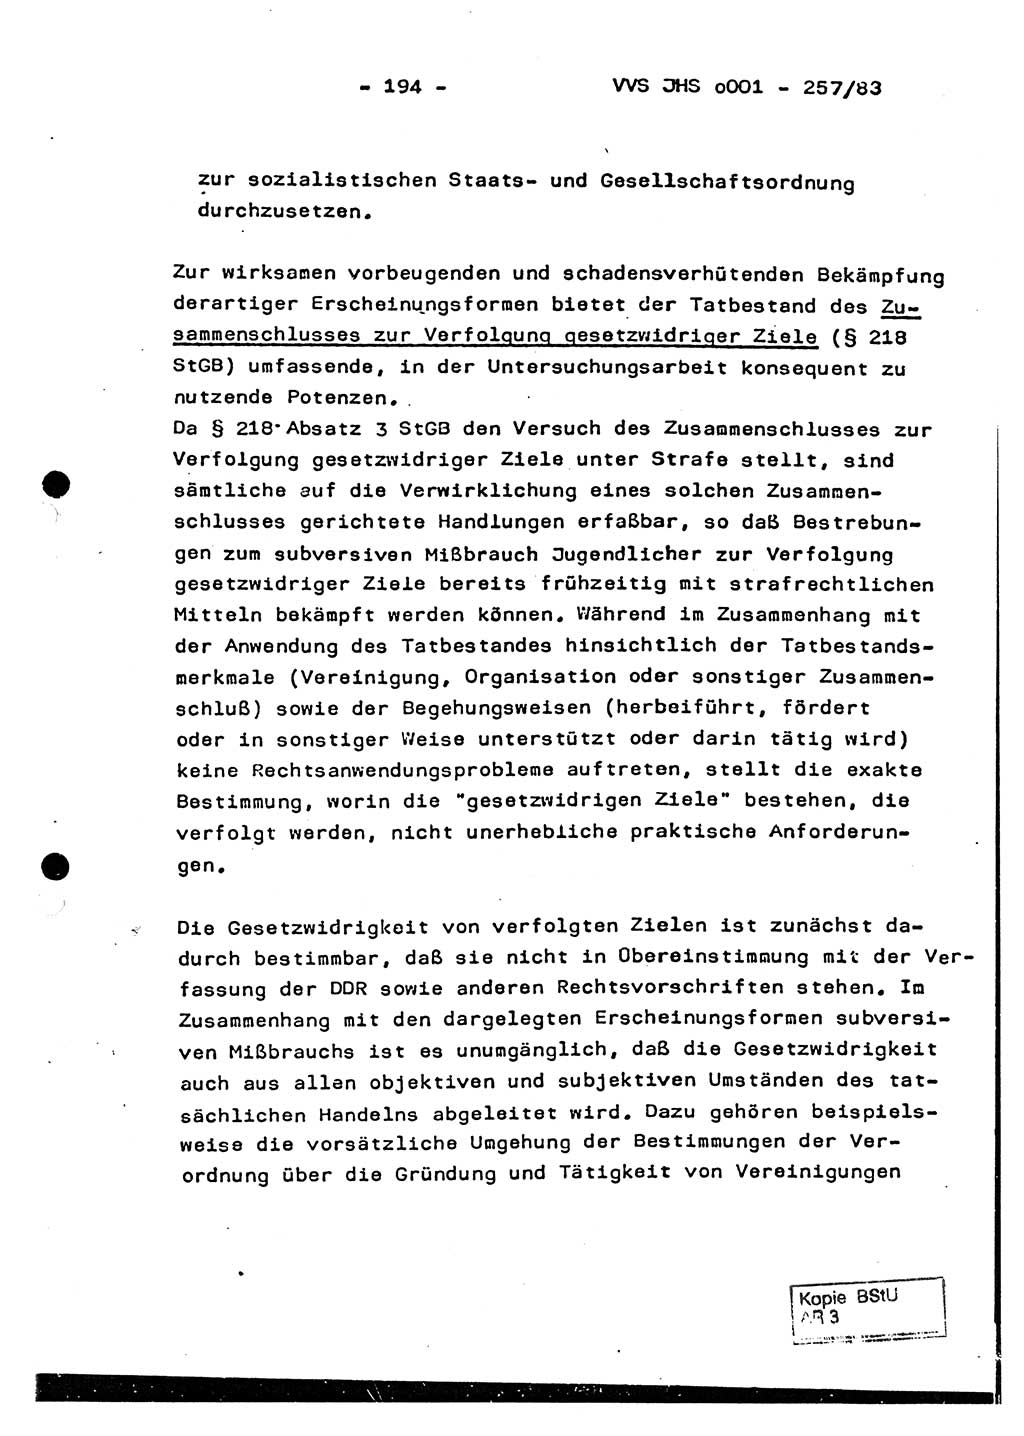 Dissertation, Oberst Helmut Lubas (BV Mdg.), Oberstleutnant Manfred Eschberger (HA IX), Oberleutnant Hans-Jürgen Ludwig (JHS), Ministerium für Staatssicherheit (MfS) [Deutsche Demokratische Republik (DDR)], Juristische Hochschule (JHS), Vertrauliche Verschlußsache (VVS) o001-257/83, Potsdam 1983, Seite 194 (Diss. MfS DDR JHS VVS o001-257/83 1983, S. 194)